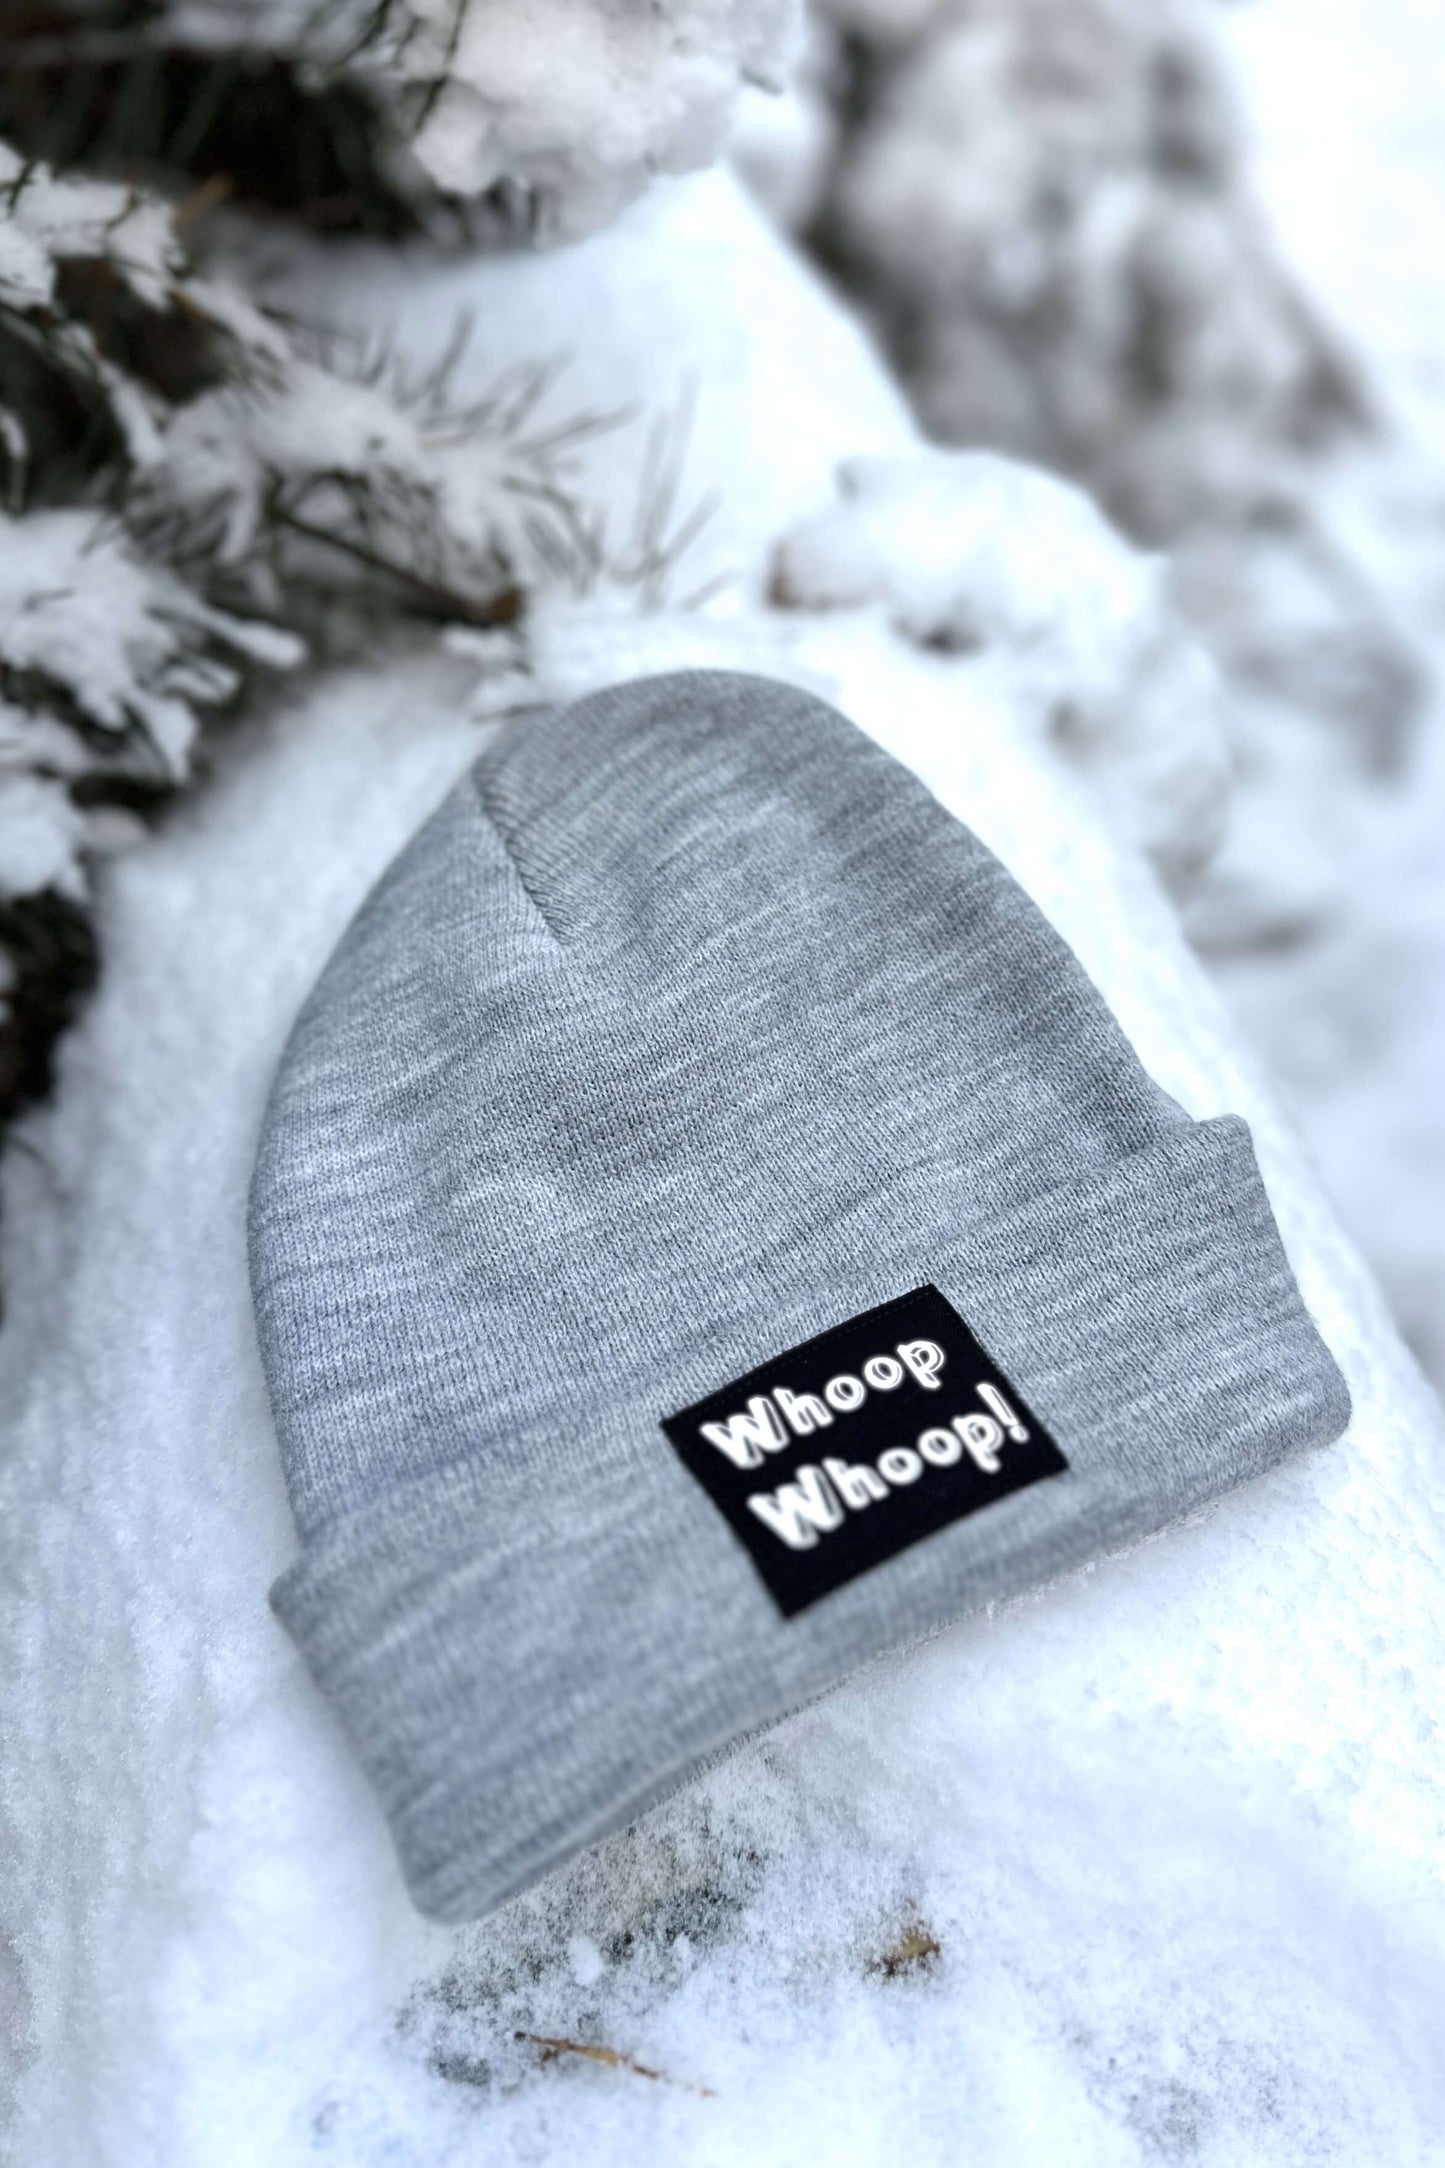 Graue Mütze mit Whoop Whoop! Motiv von LA.LUKA Berlin, liegt im Schnee.